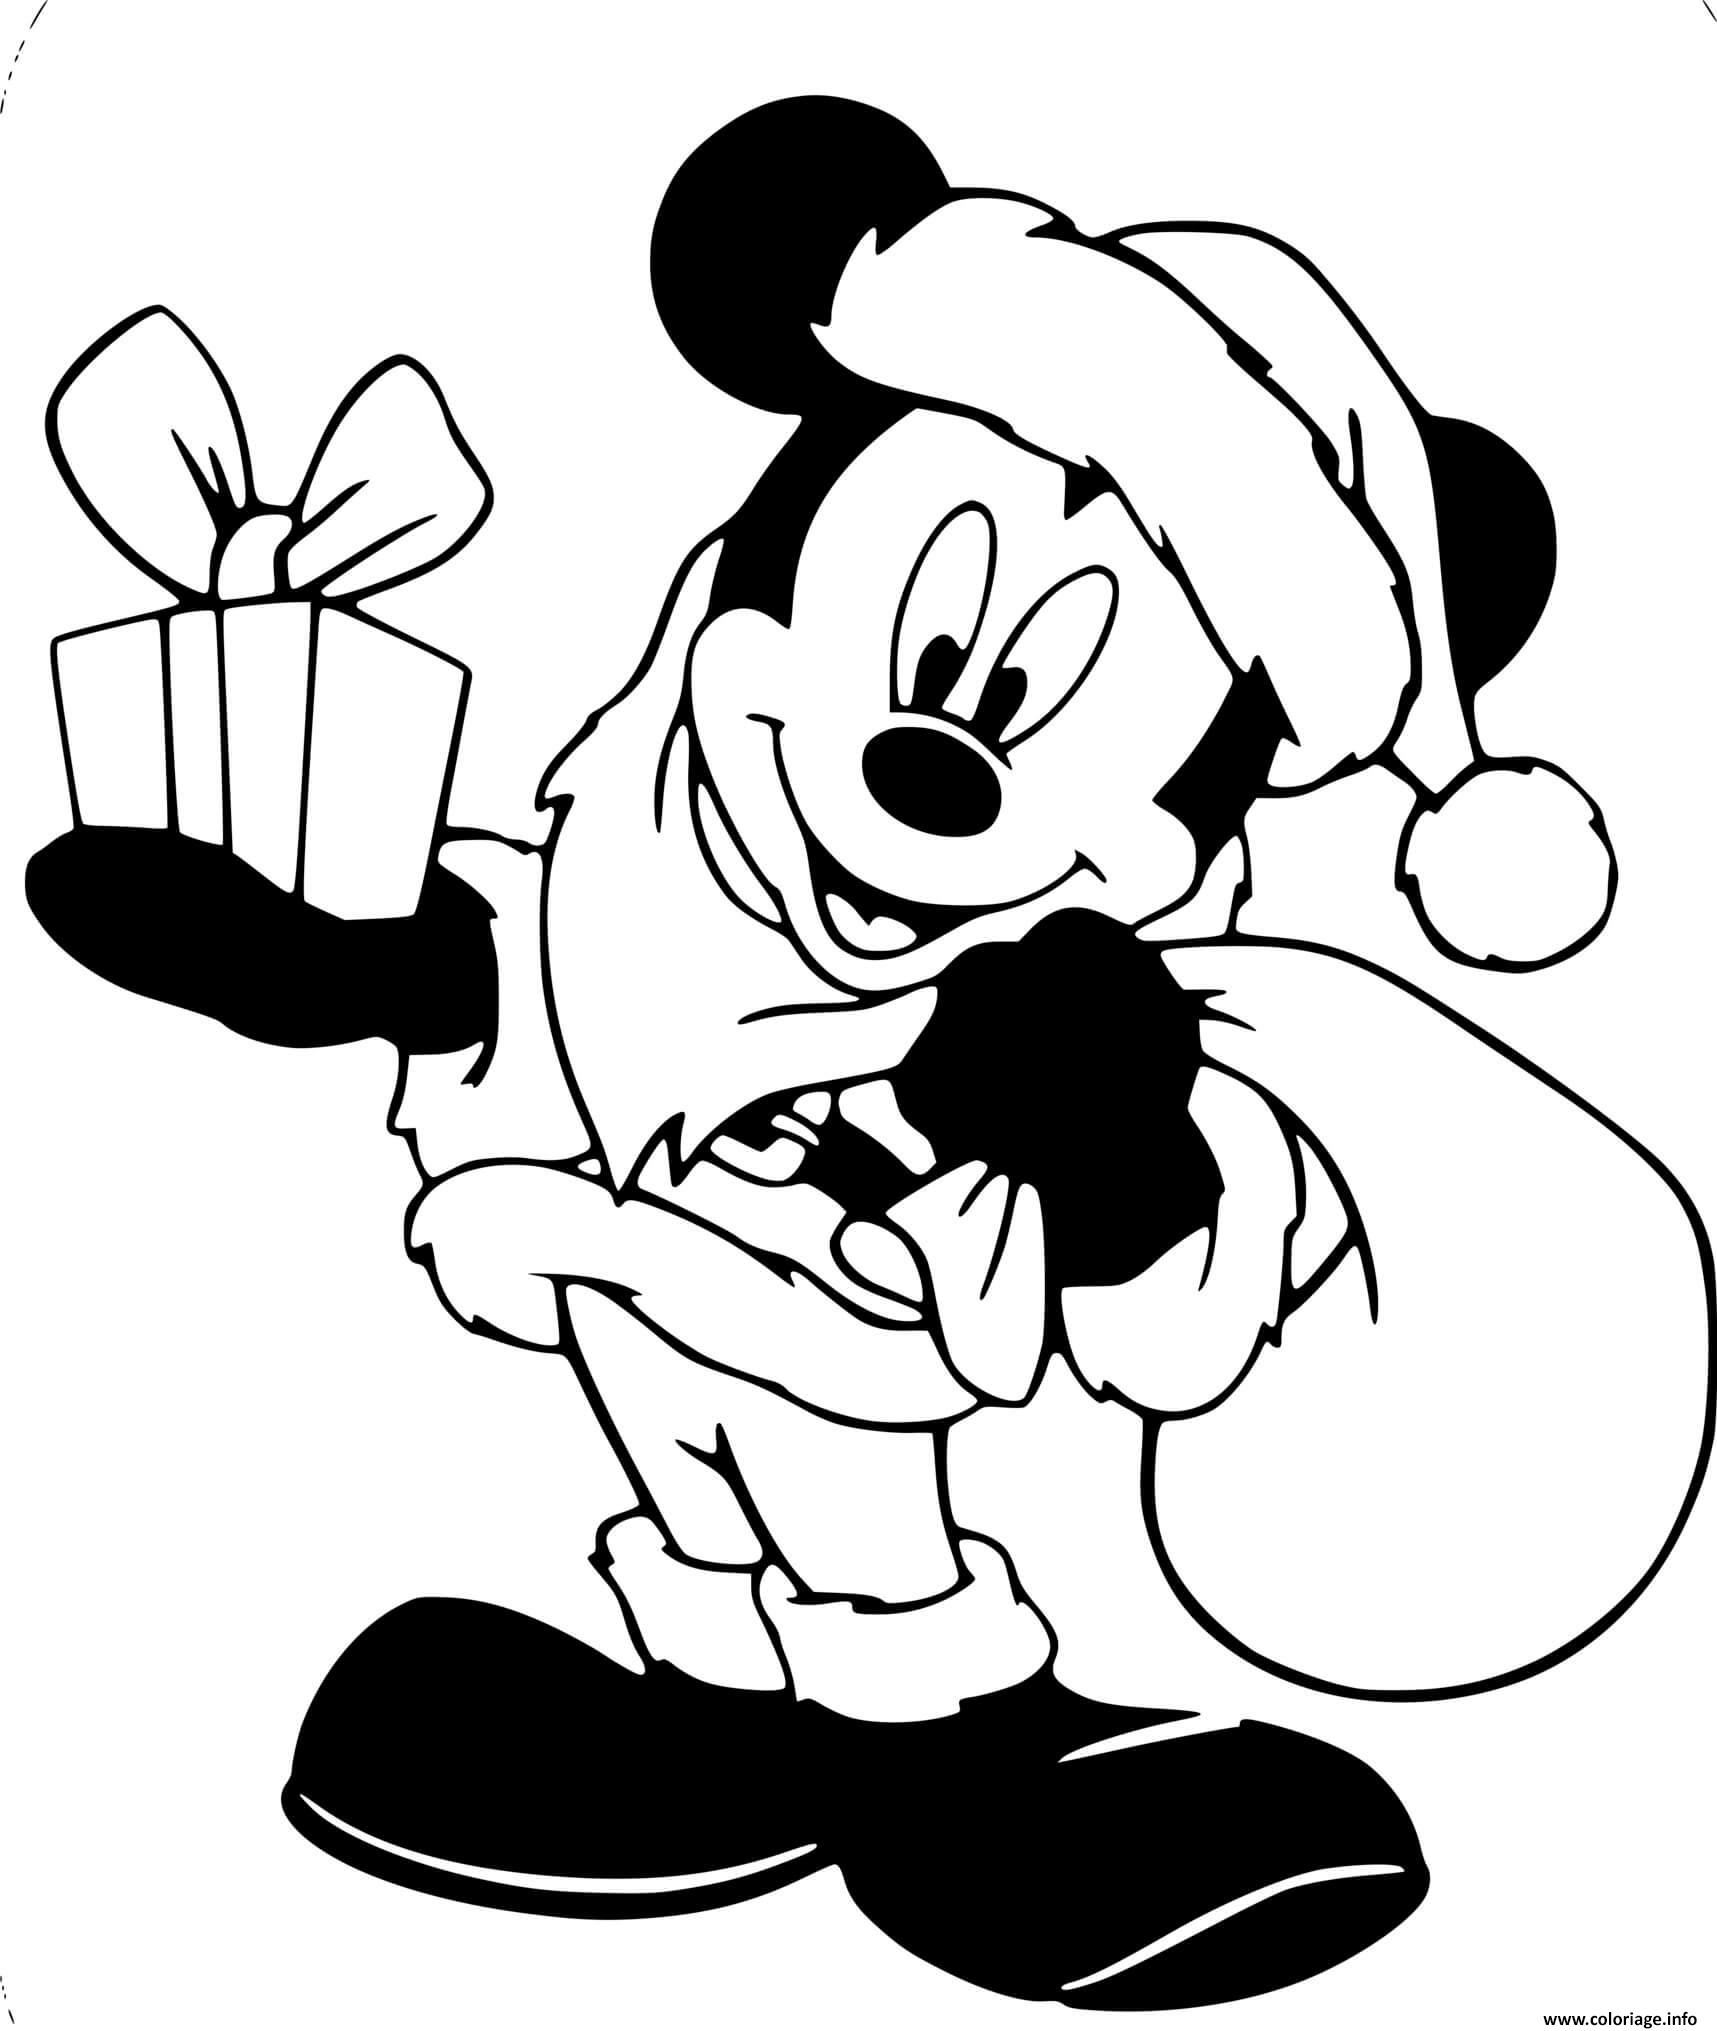 Coloriage Mickey Mouse As Santa Claus Dessin Noel Disney Imprimer